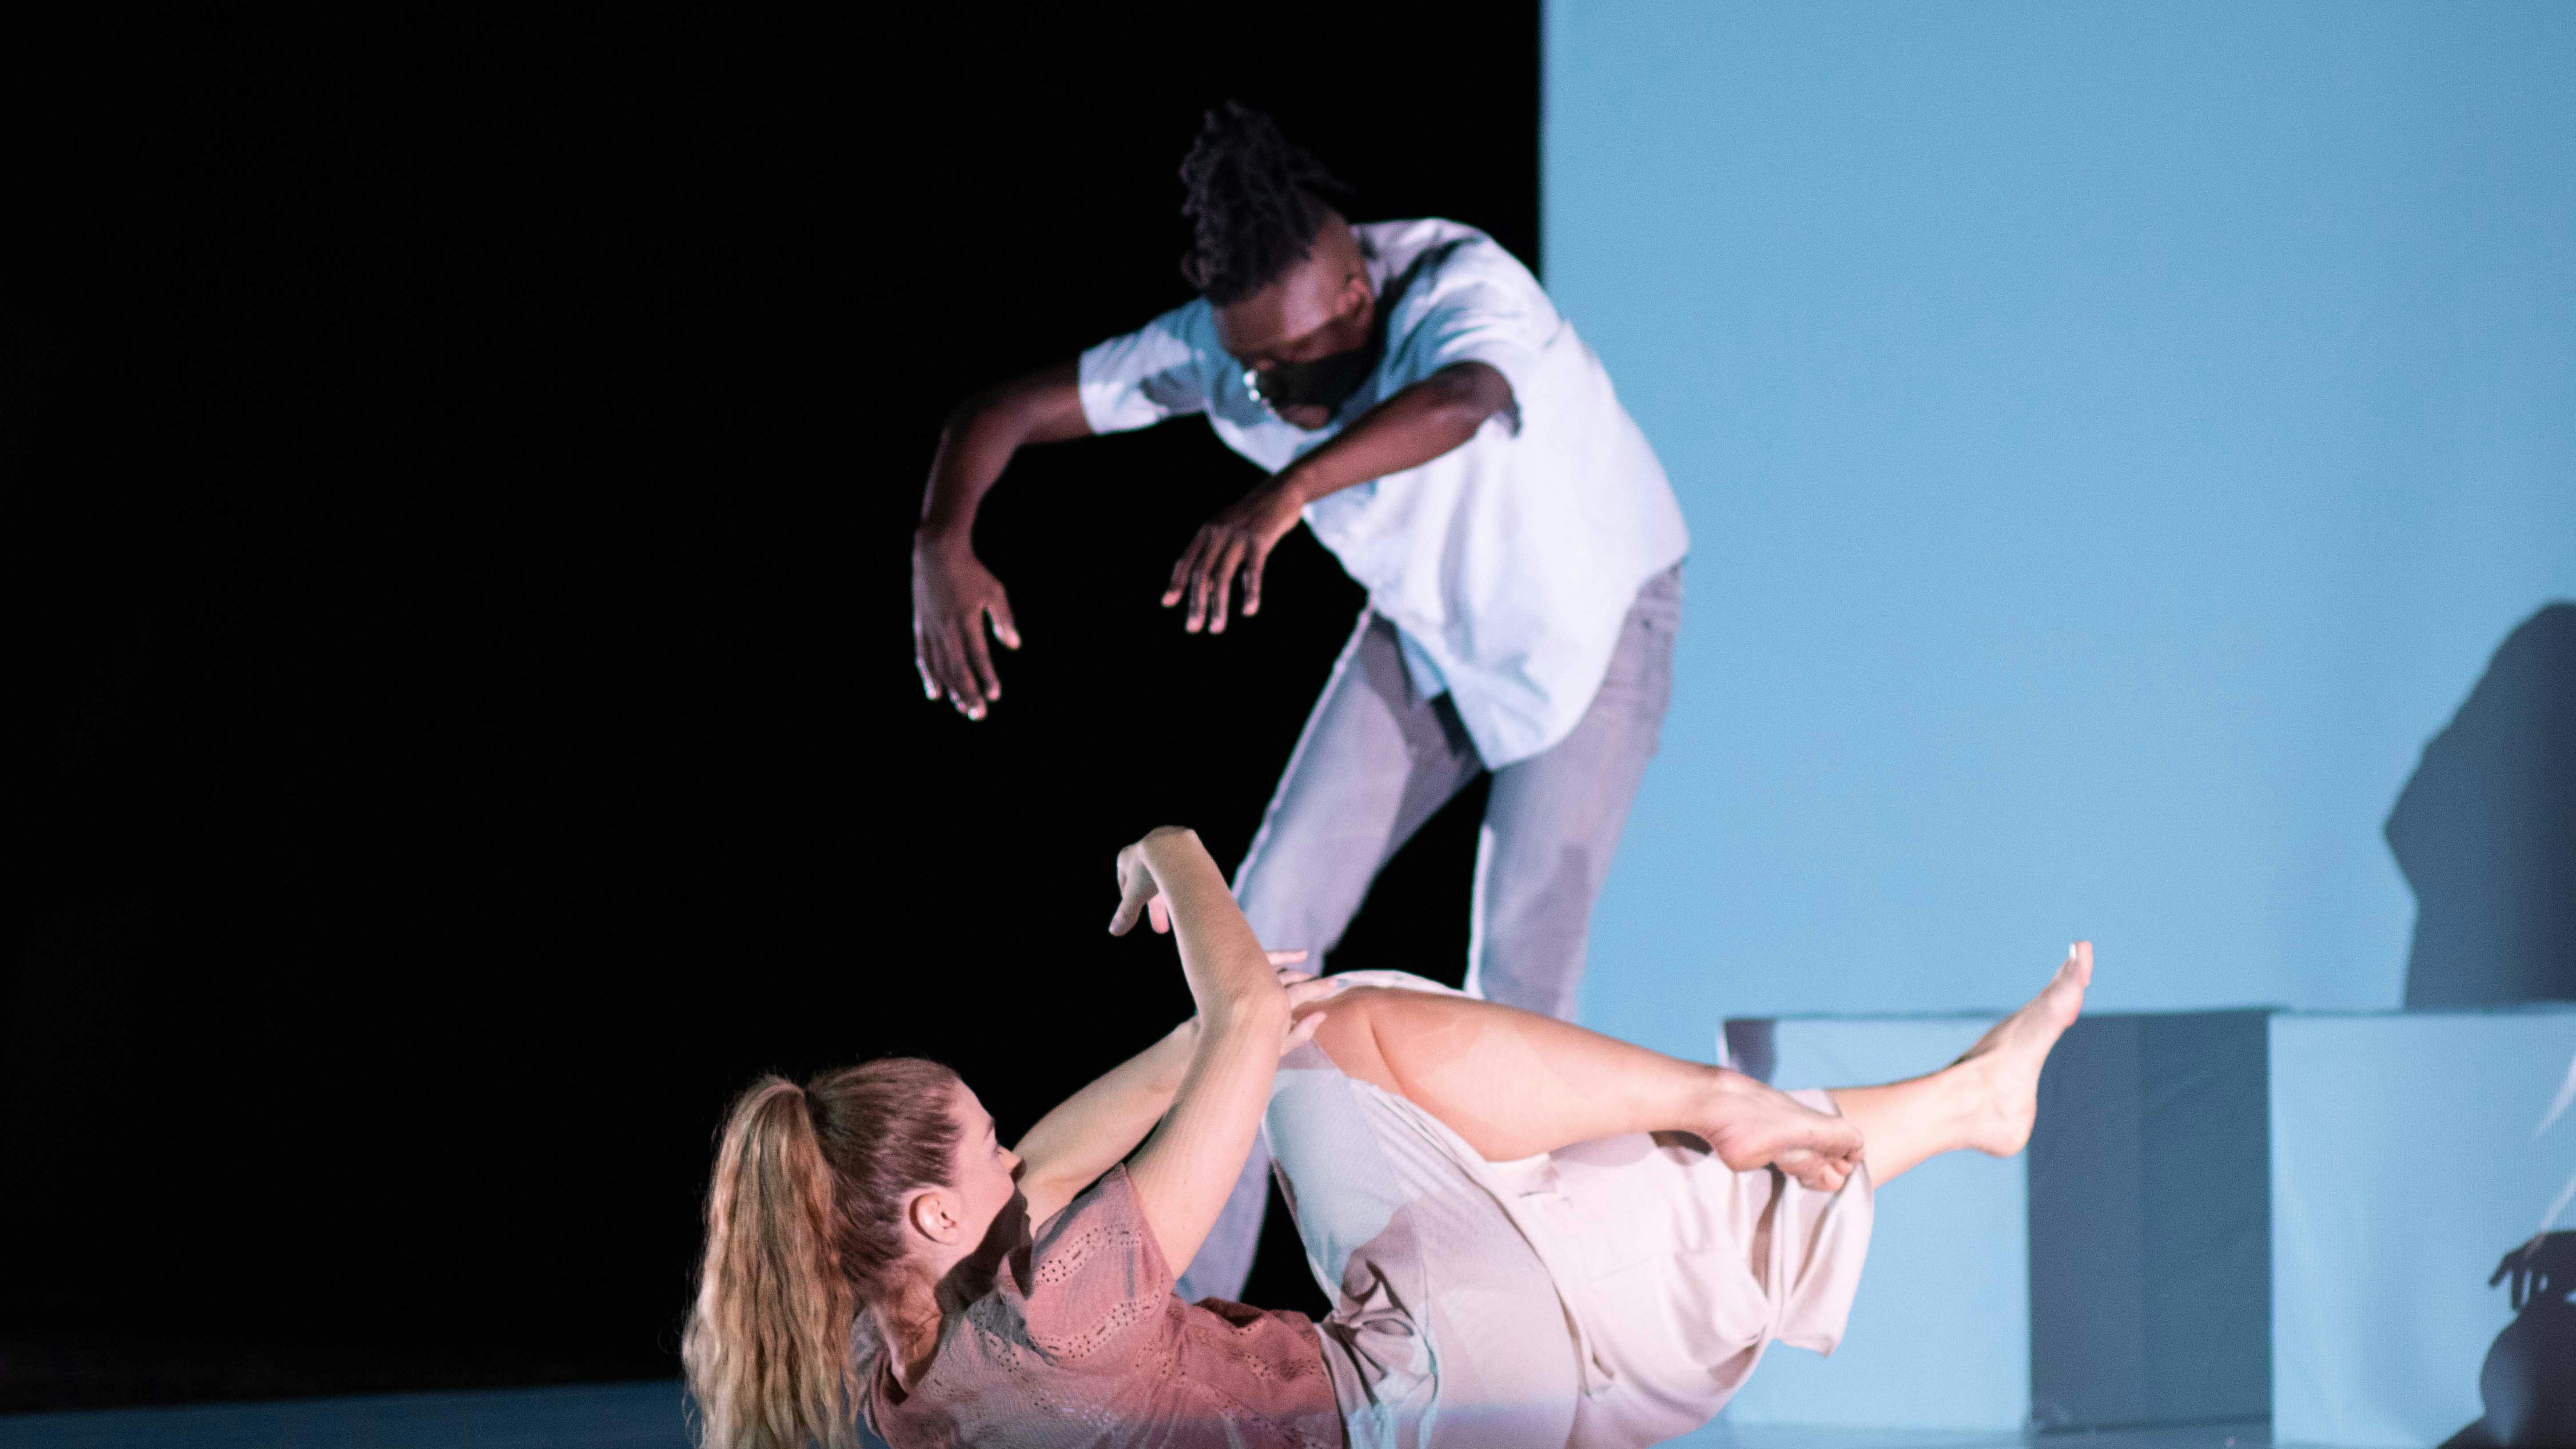 Sarah Bockers e Dodzi Dougban sul palco durante la performance Gravity.  Le è con la schiena a terra, braccia e gambe sollevate dal palco; lui è in piedi, con la schiena in contrazione e le braccia allungate in avanti.